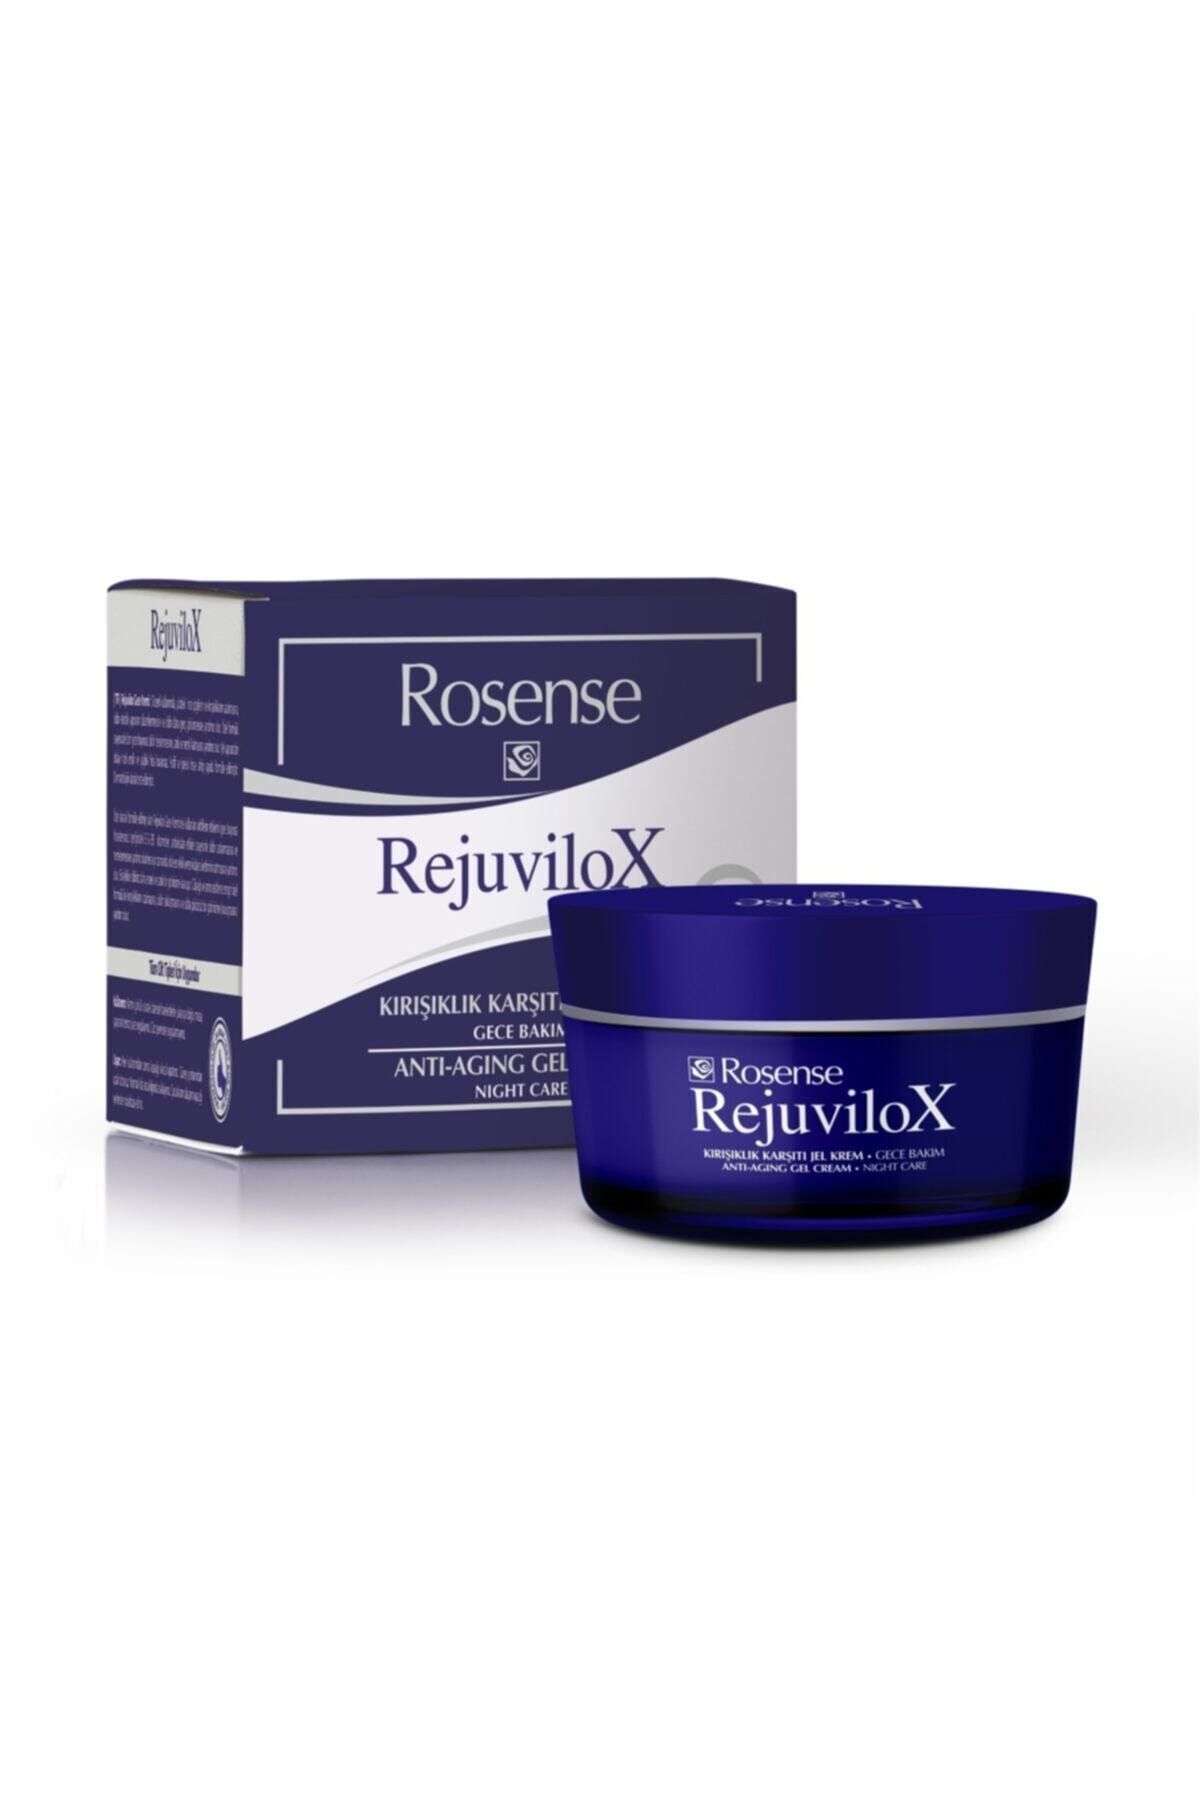 Rosense Rejuvilox Kırışıklık Karşıtı Jel Krem Gece Bakım 50 ml